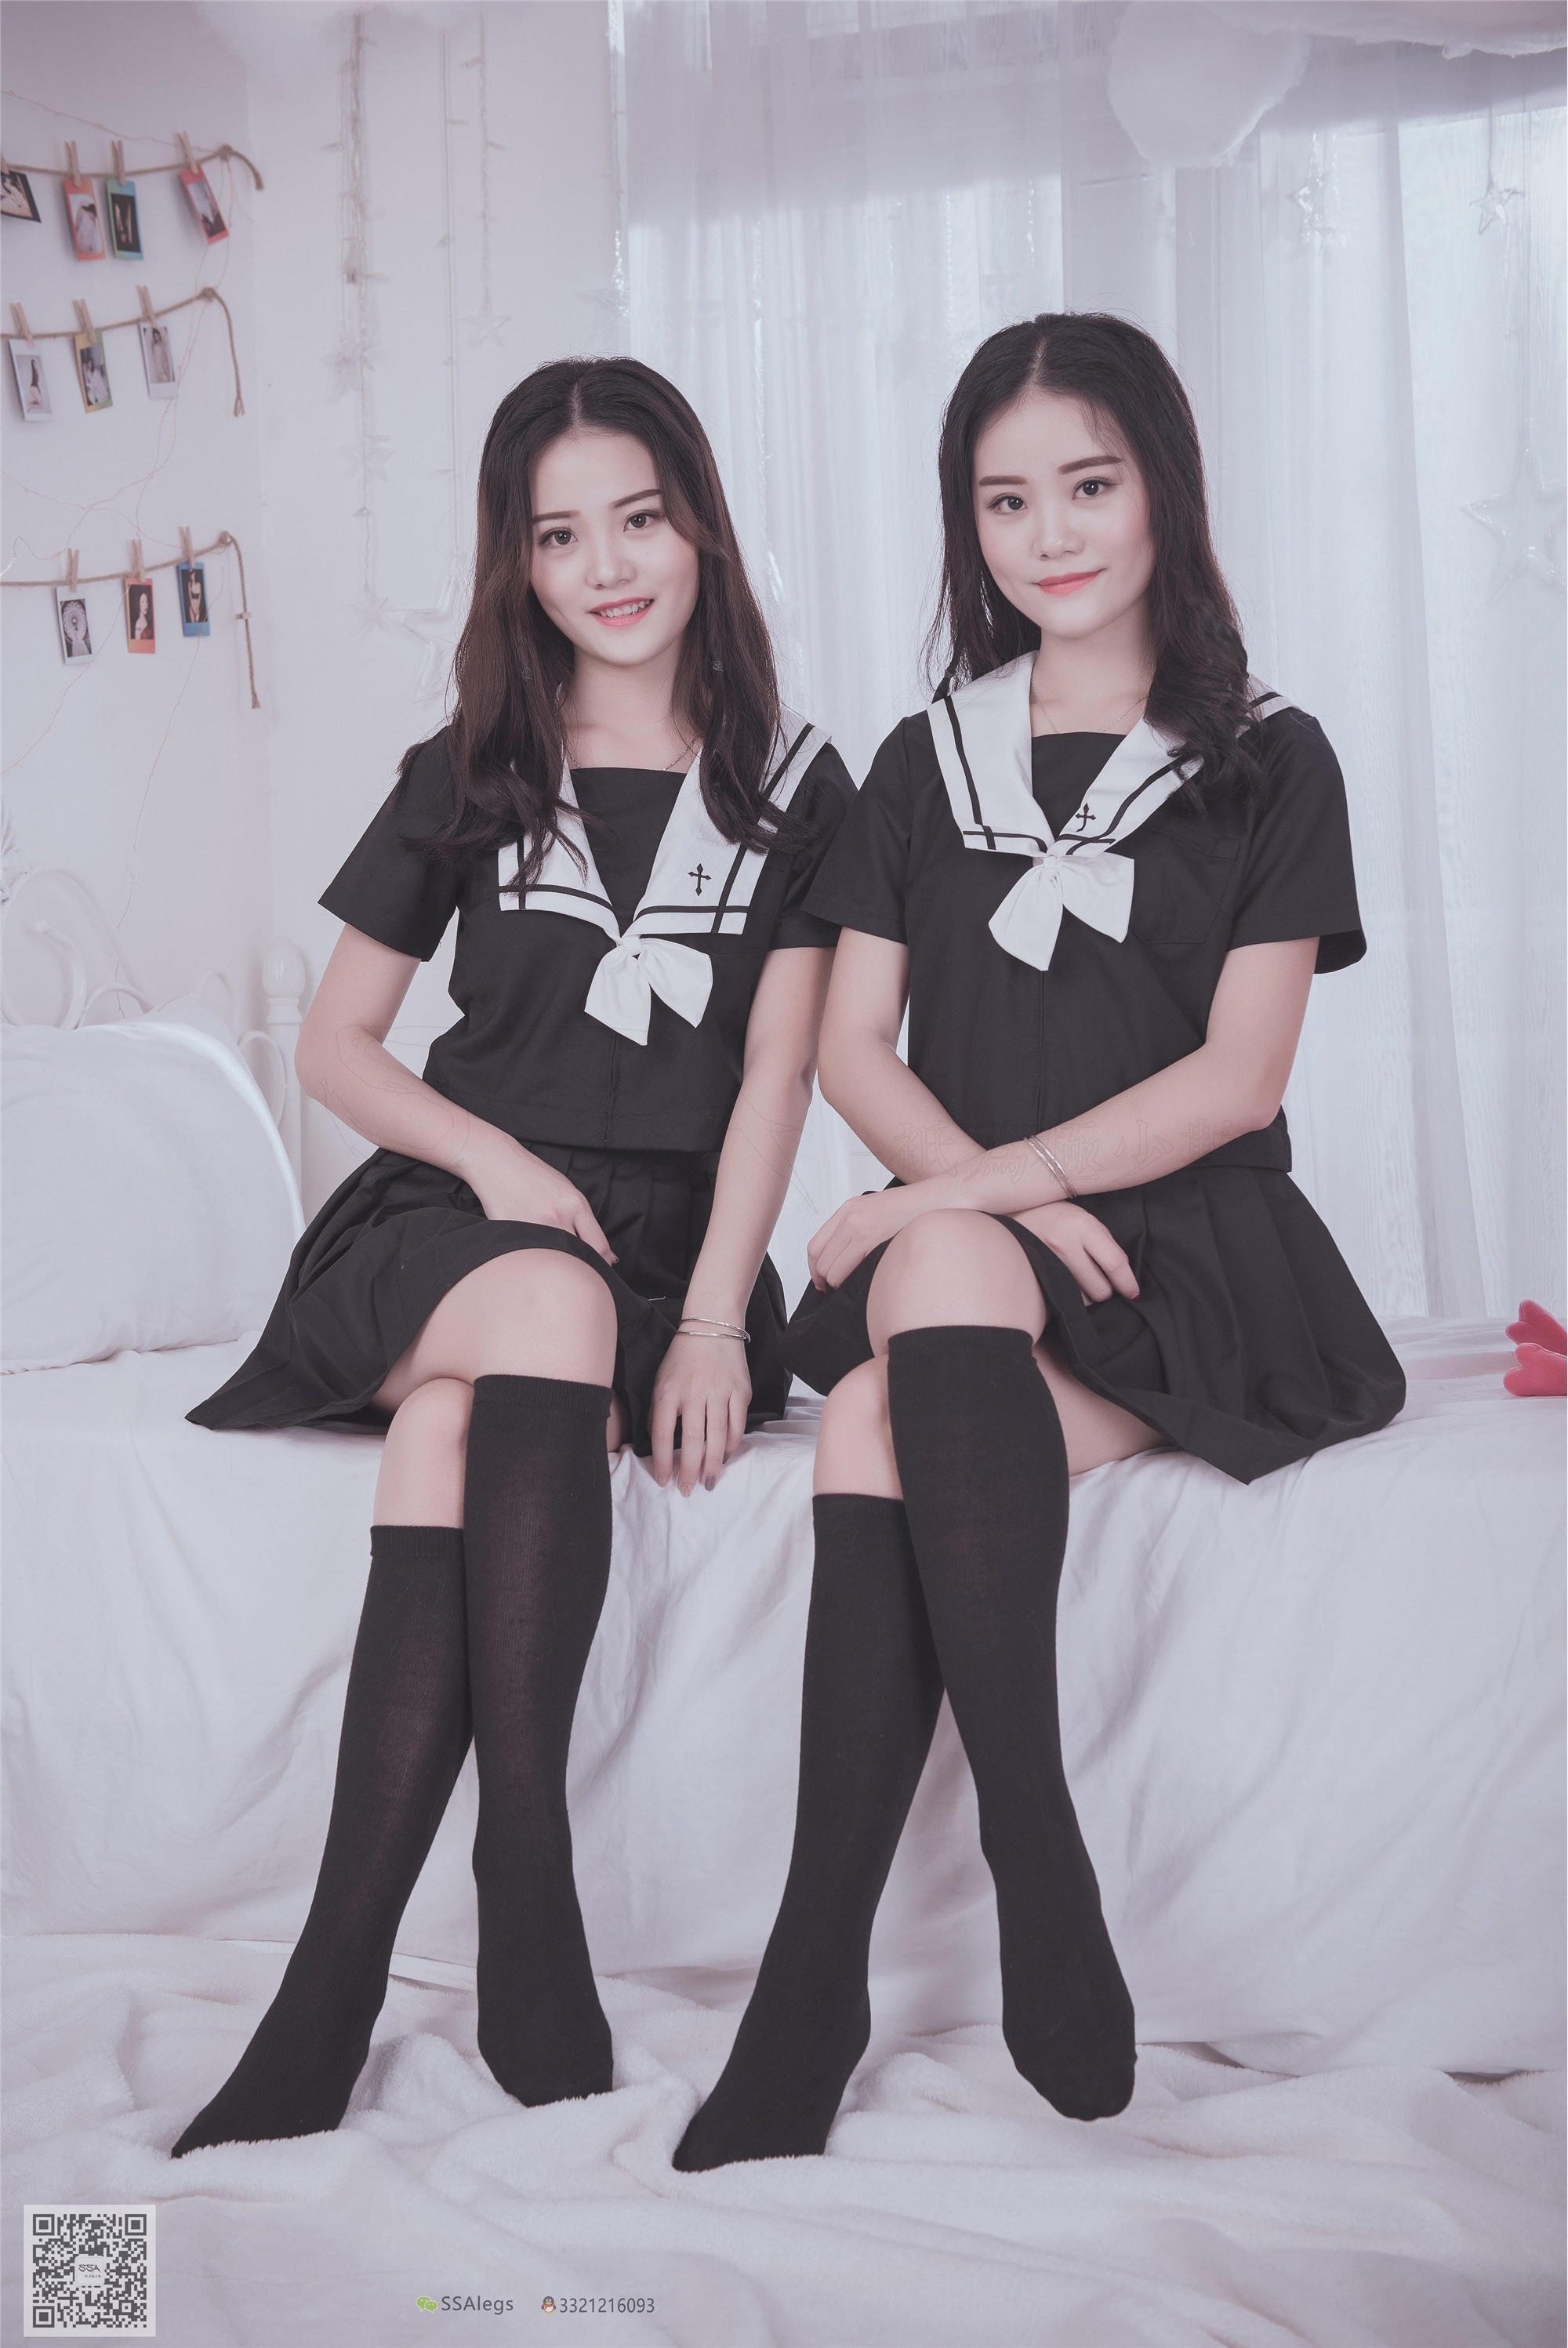 SSA silk society no.028 JK love of Qingqing sisters